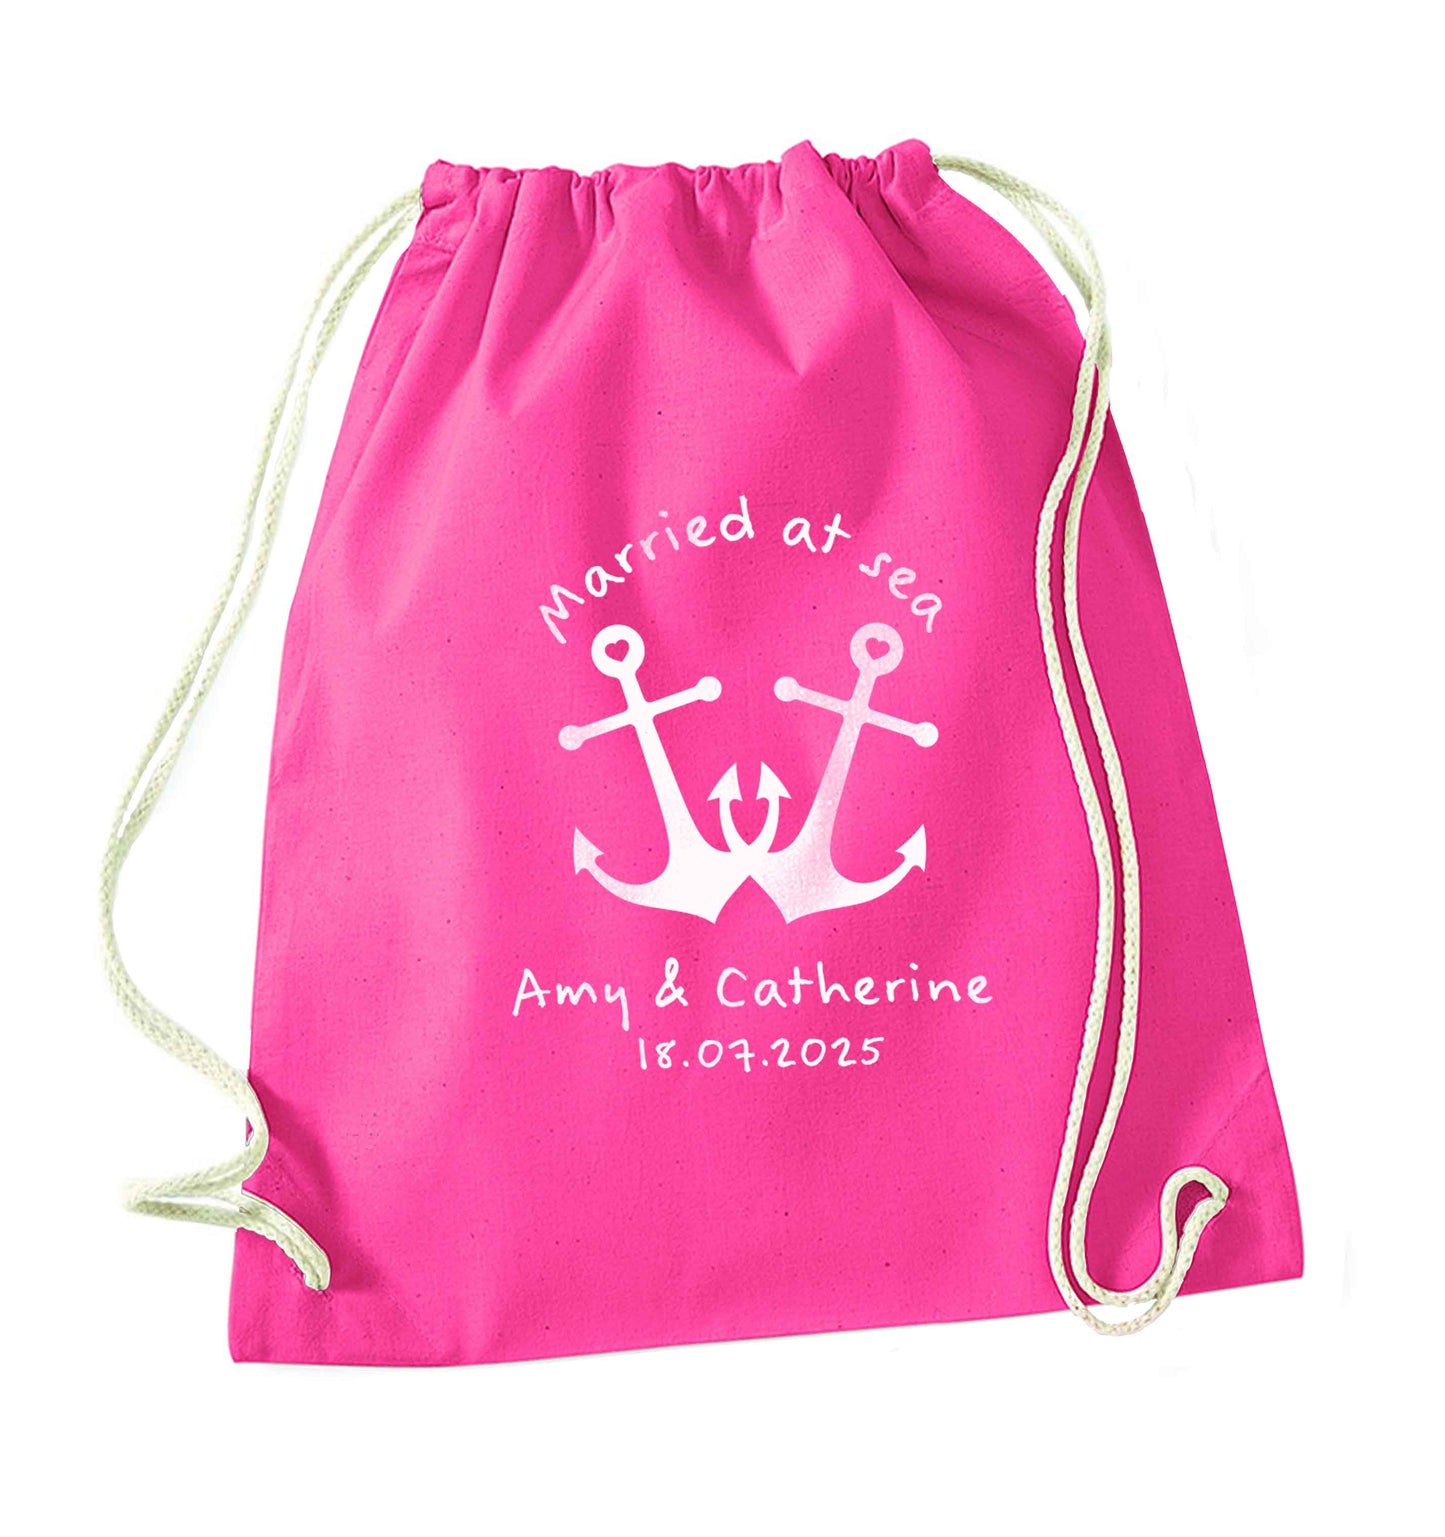 Married at sea pink anchors pink drawstring bag